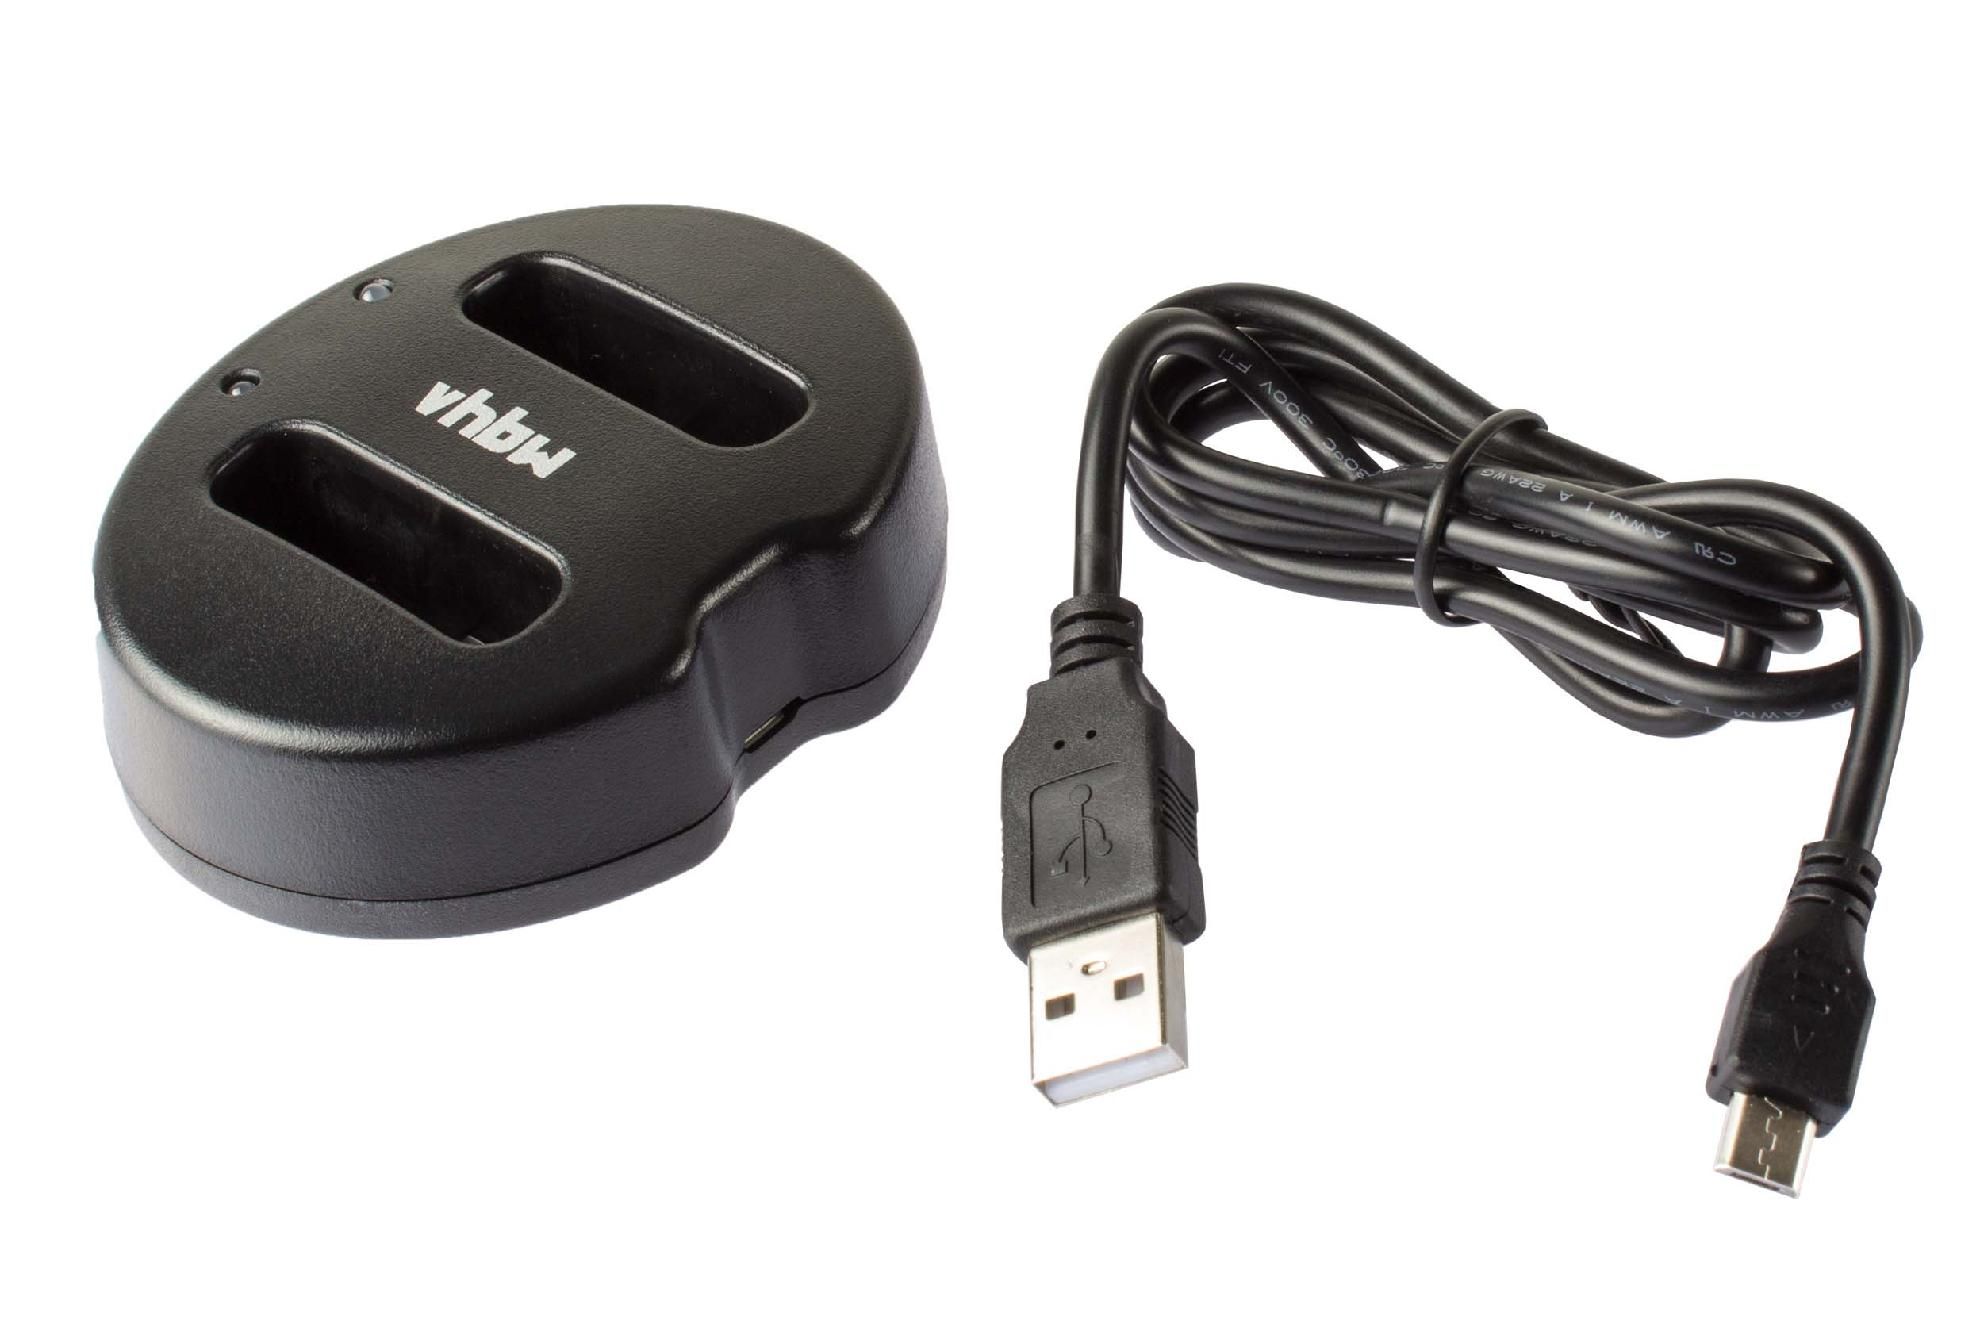 vhbw Chargeur double USB compatible avec Olympus E-400, E-410, E-420, E-450, E-600, E-620 caméra, action-cam - Chargeur, témoin de charge